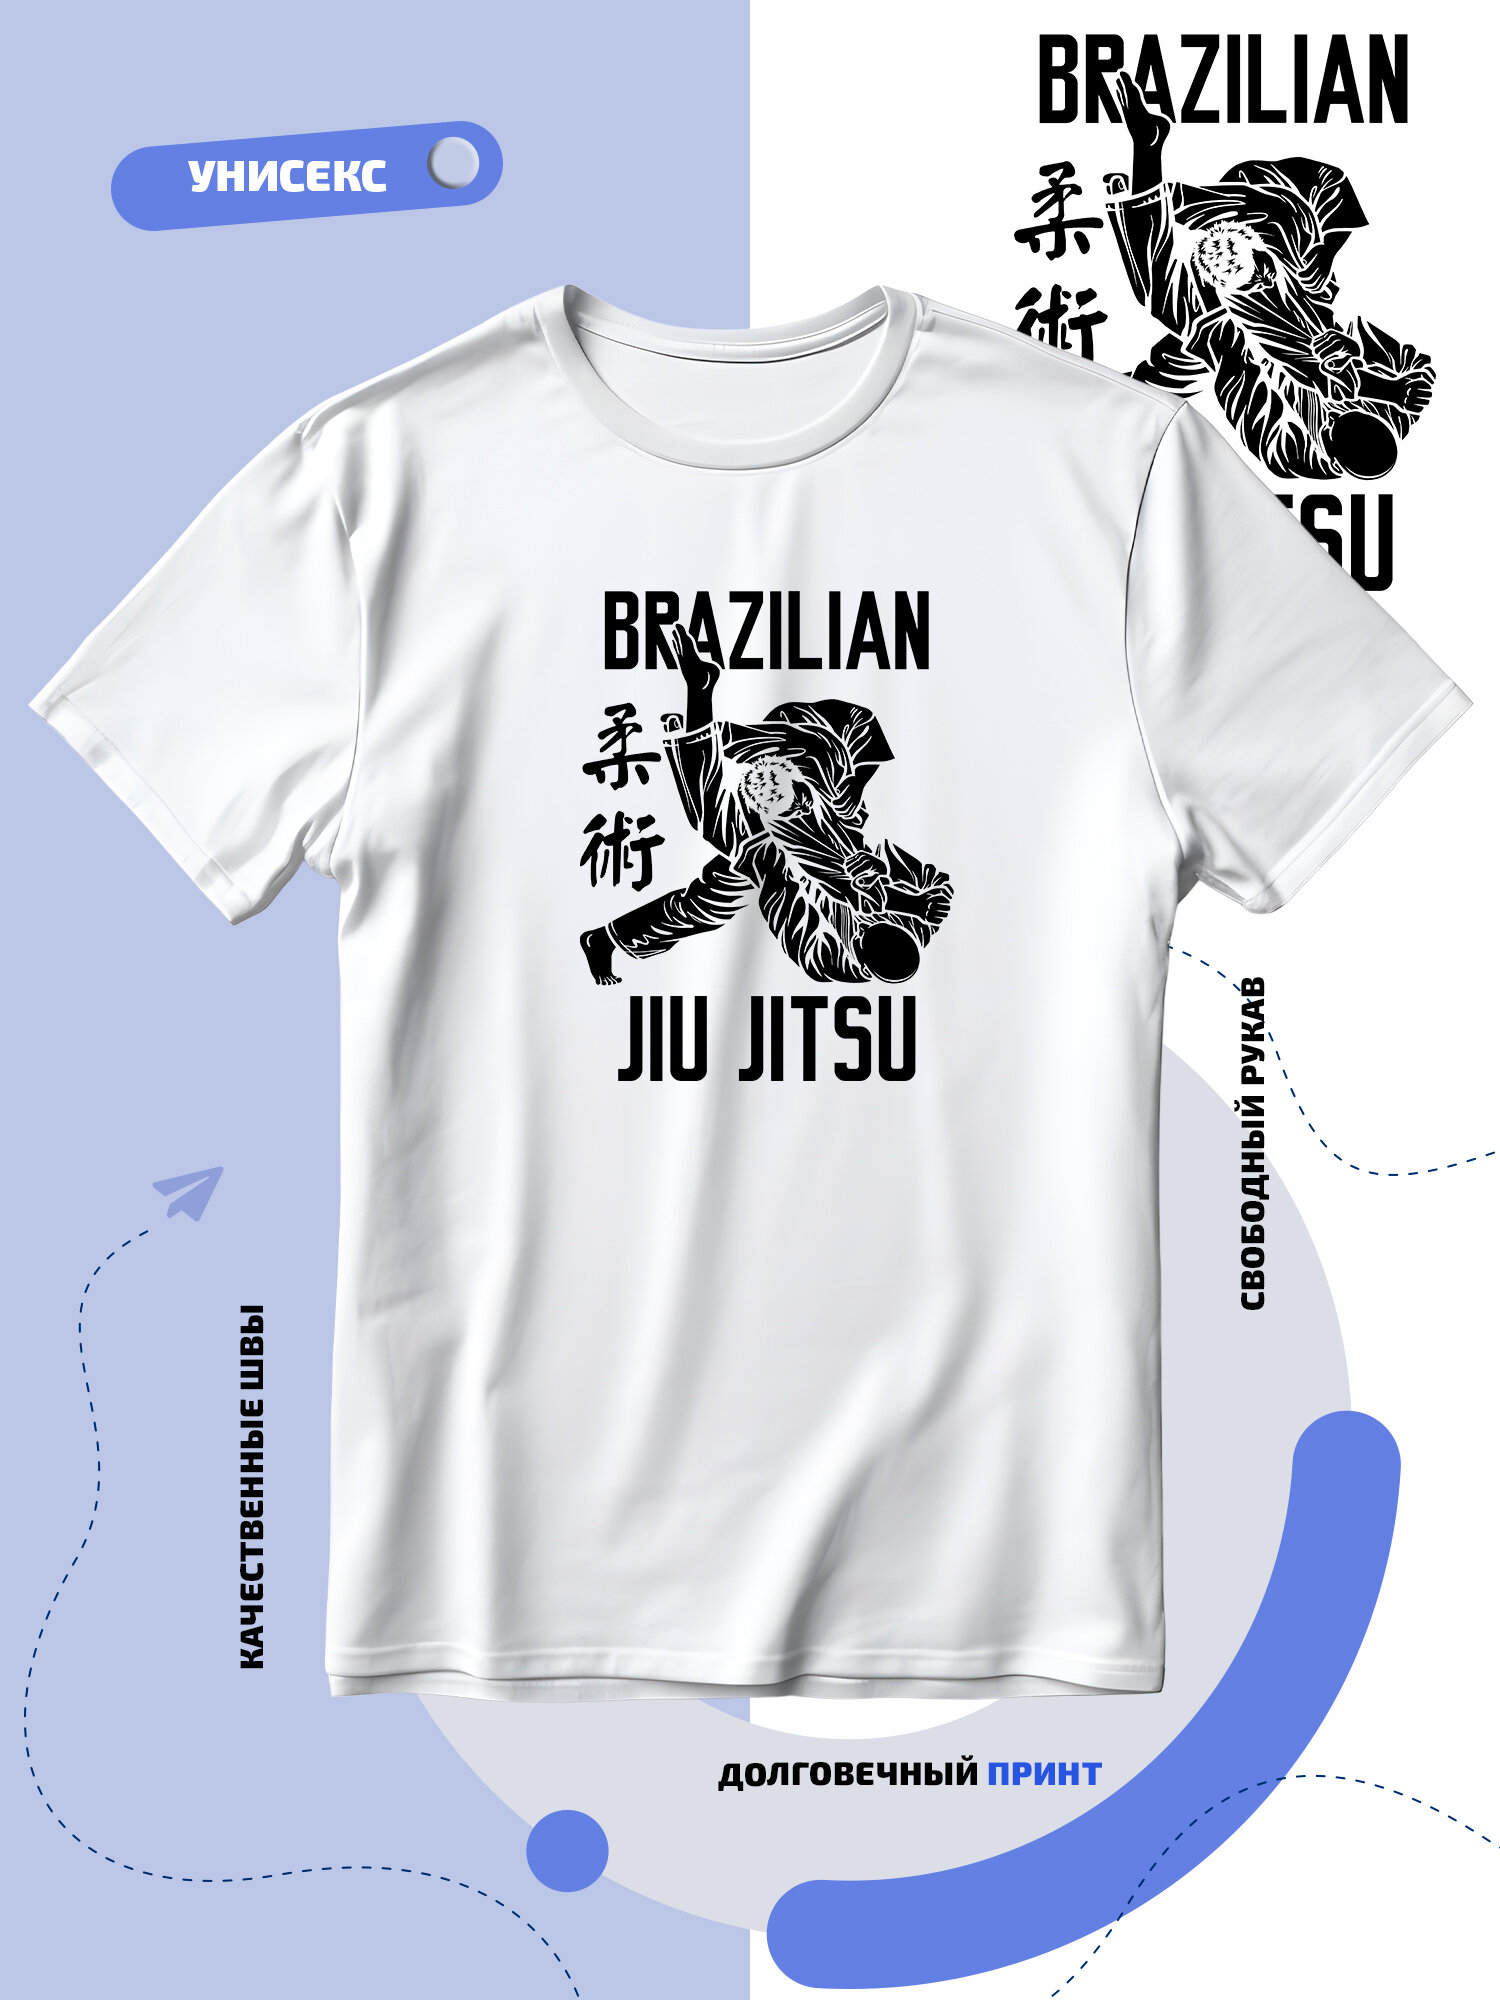 Футболка SMAIL-P brazilian jiu jitsu единоборства